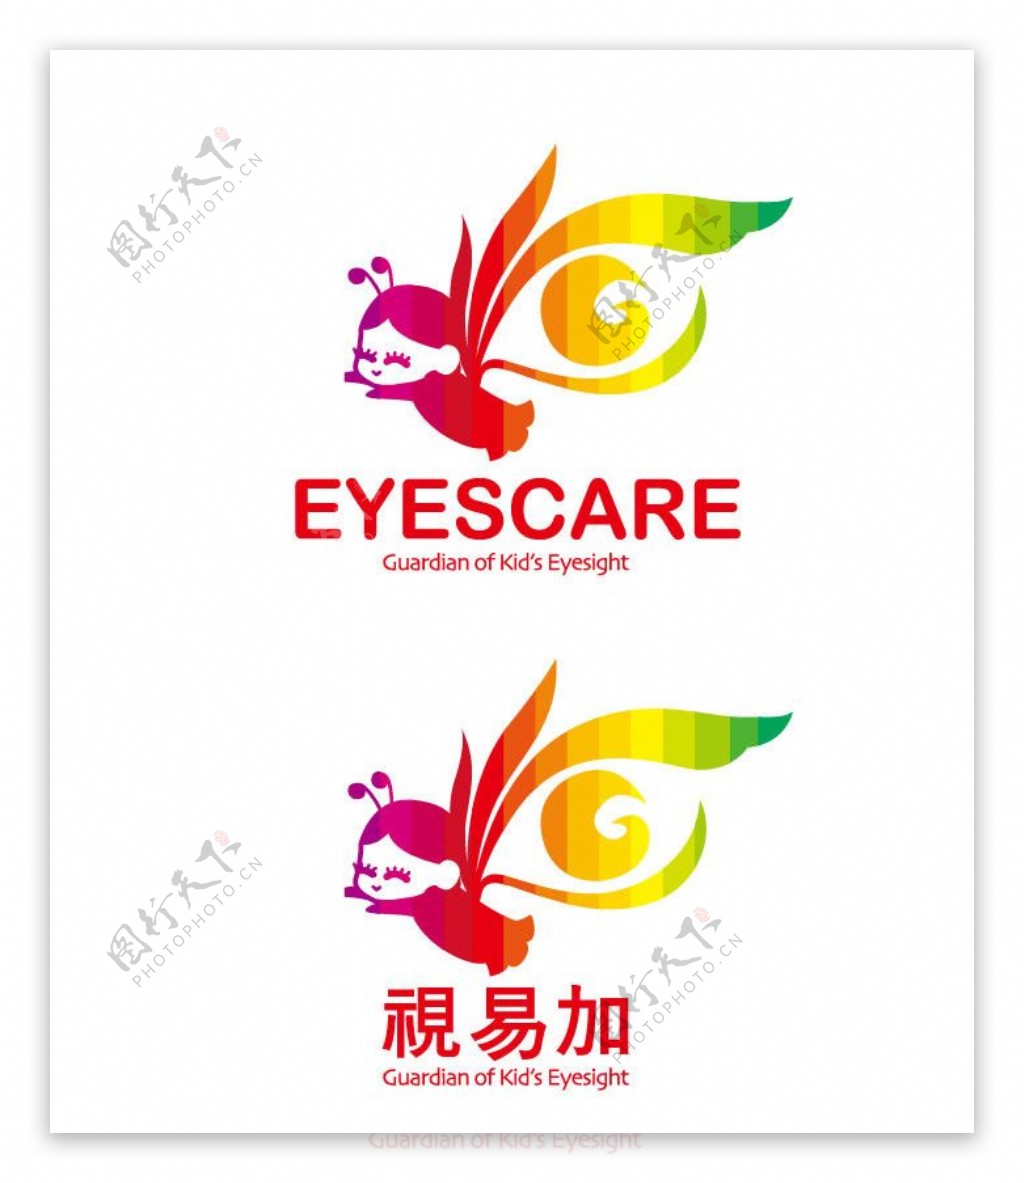 护眼中心logo图片